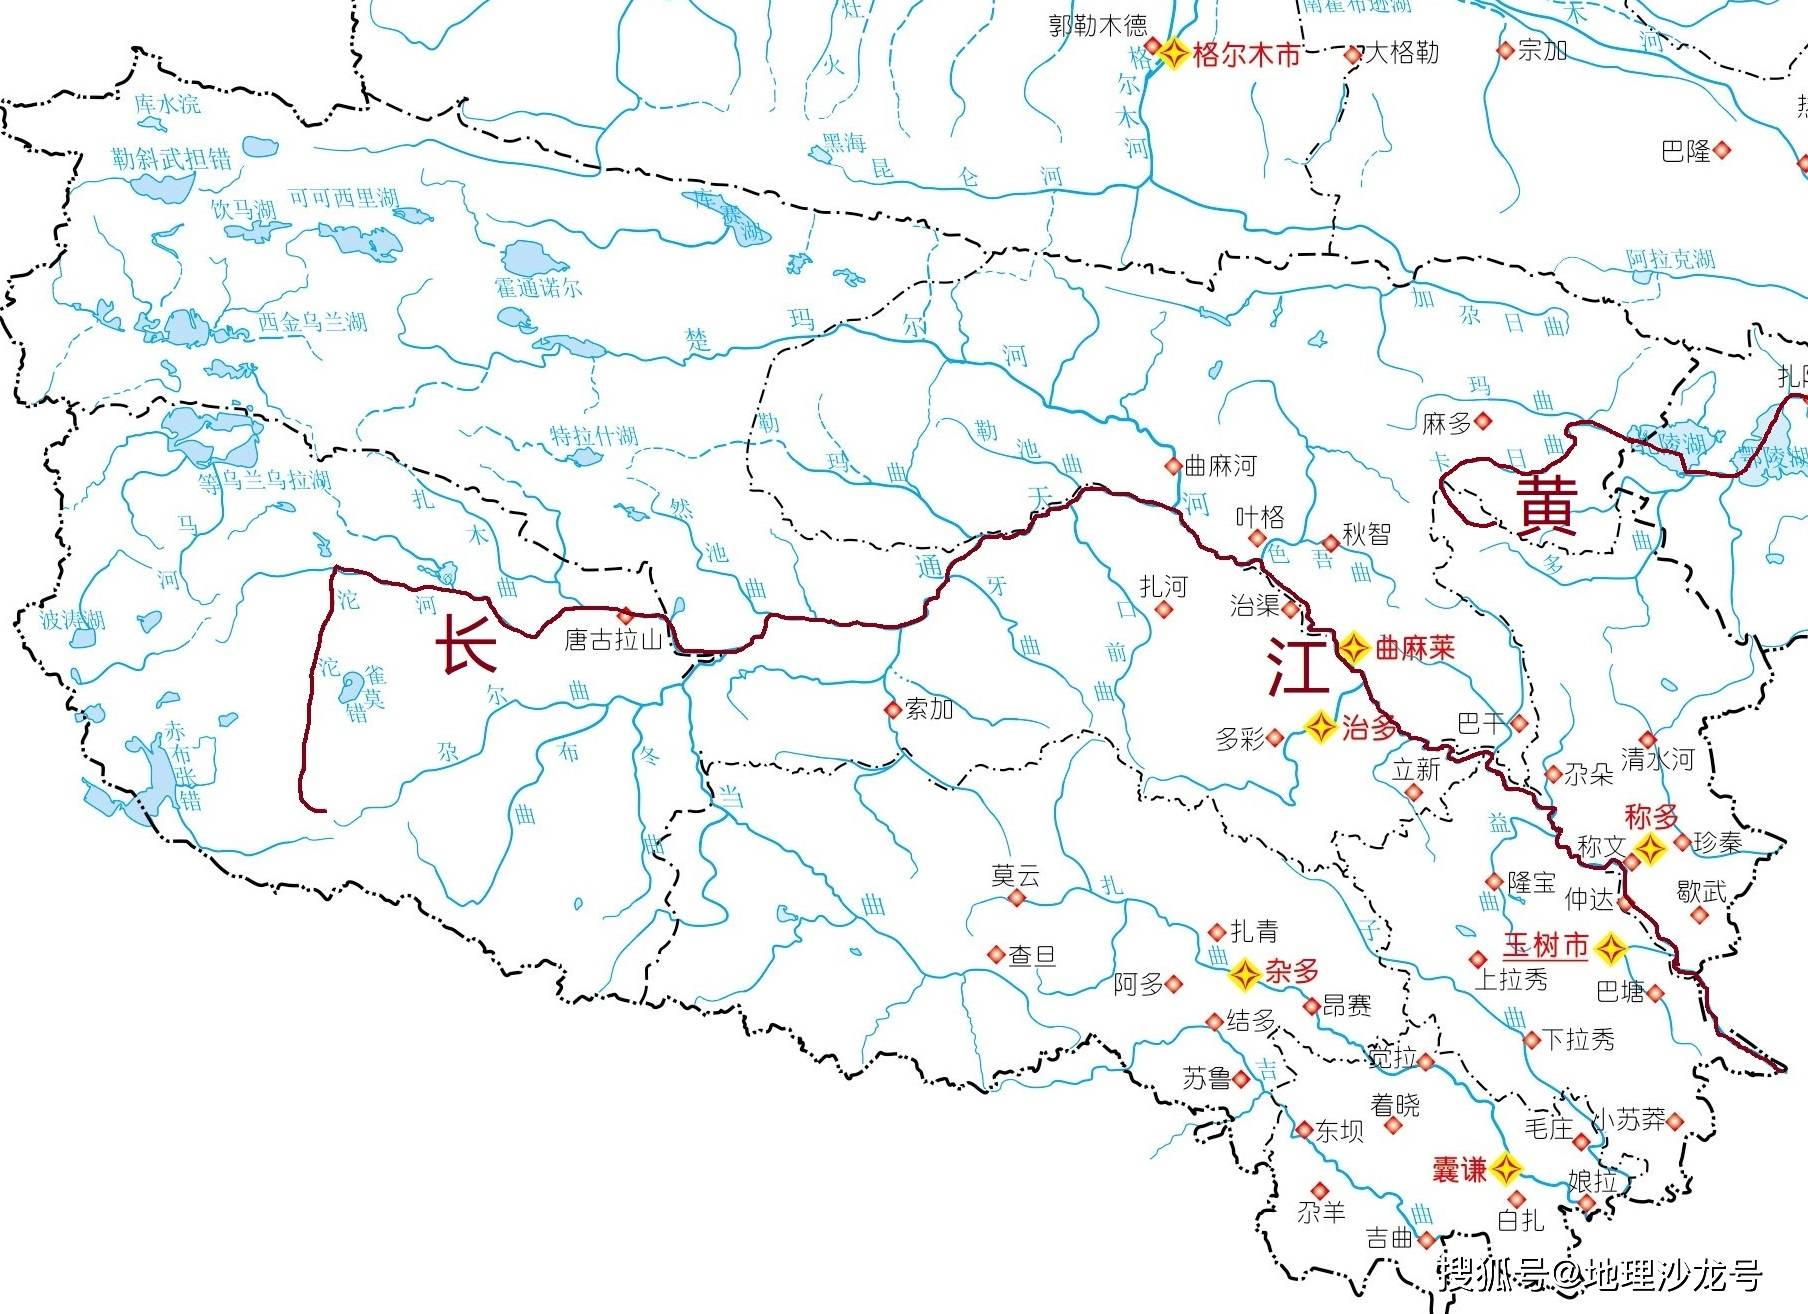 长江和黄河两条母亲河的干流都流经的省区只有青海省和四川省